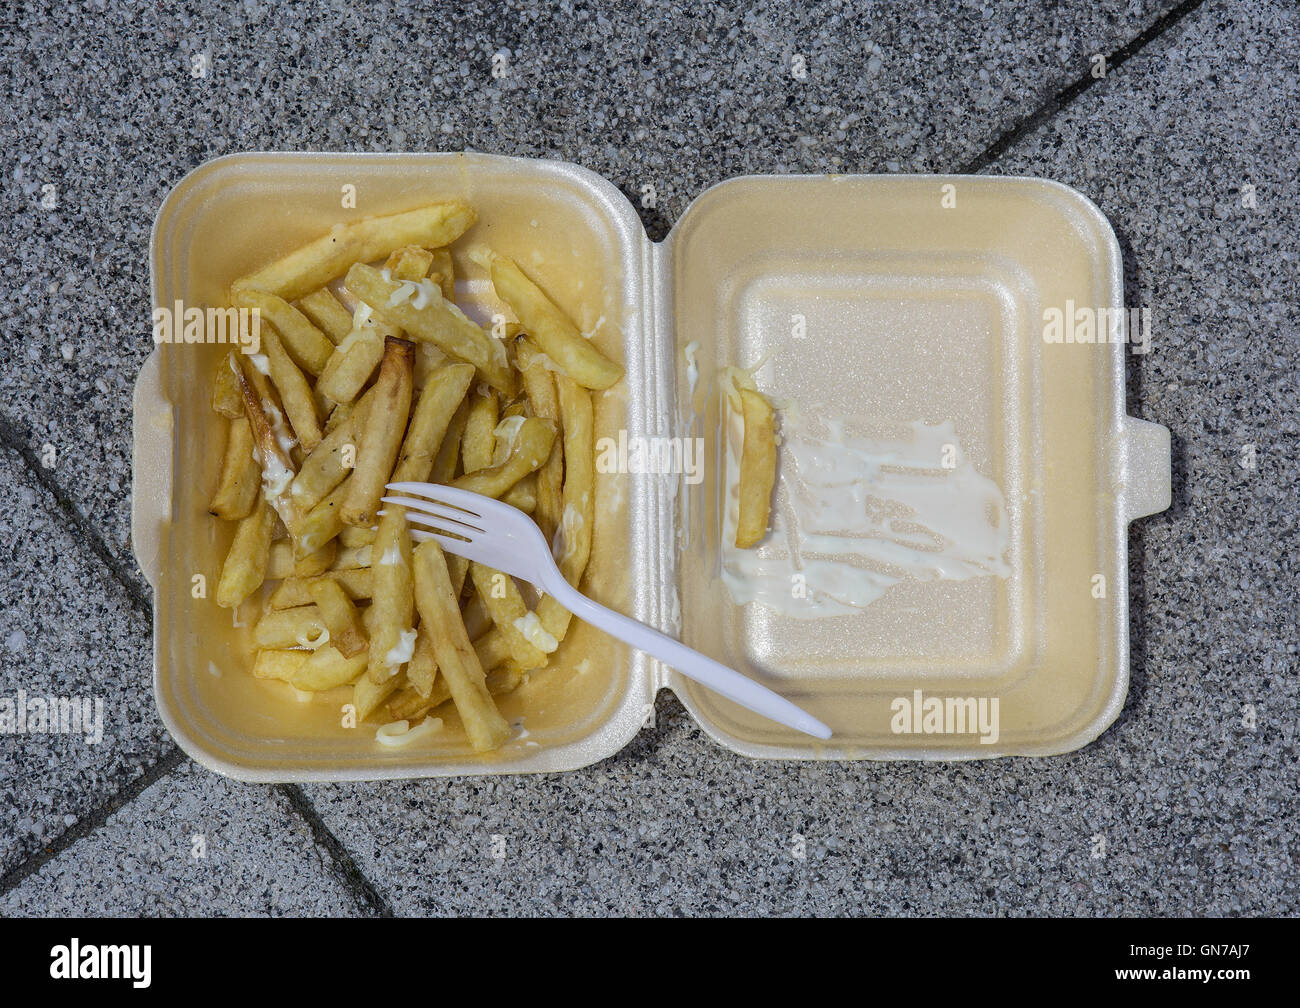 Una plastica scartato il fast food vassoio contenente alcuni chip e una forcella di plastica Foto Stock